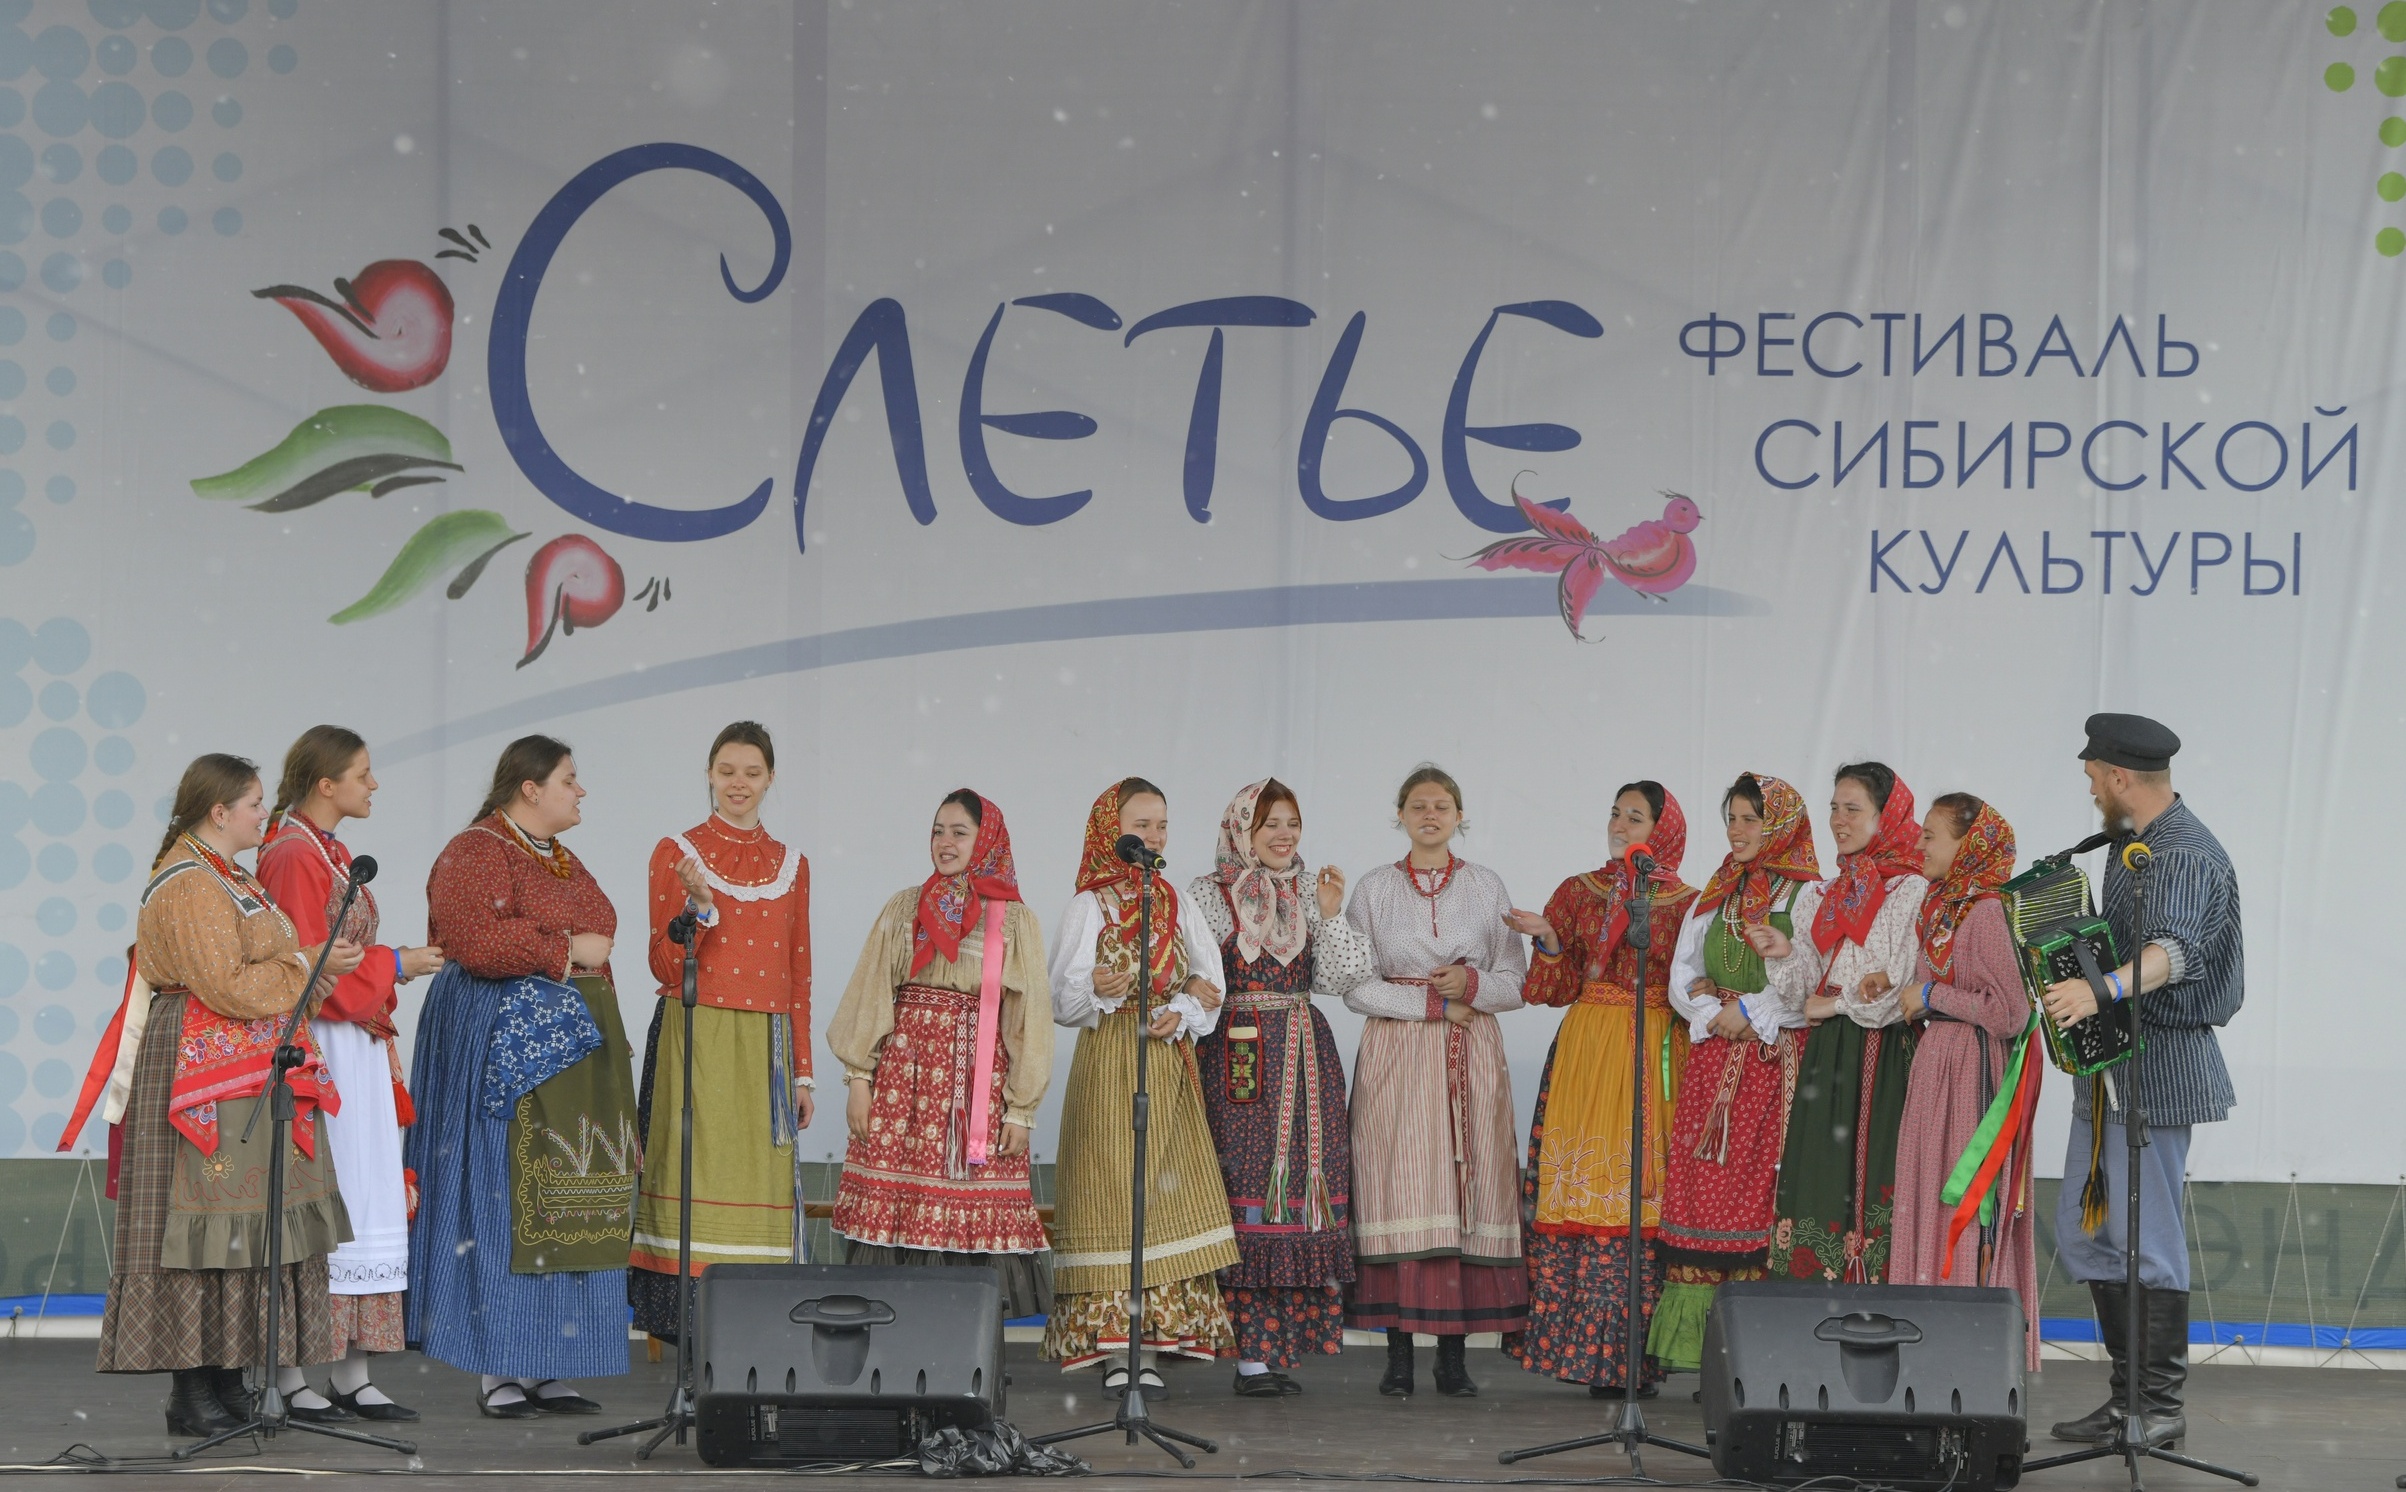 Подводим итоги фестиваля сибирской культуры "Слетье"